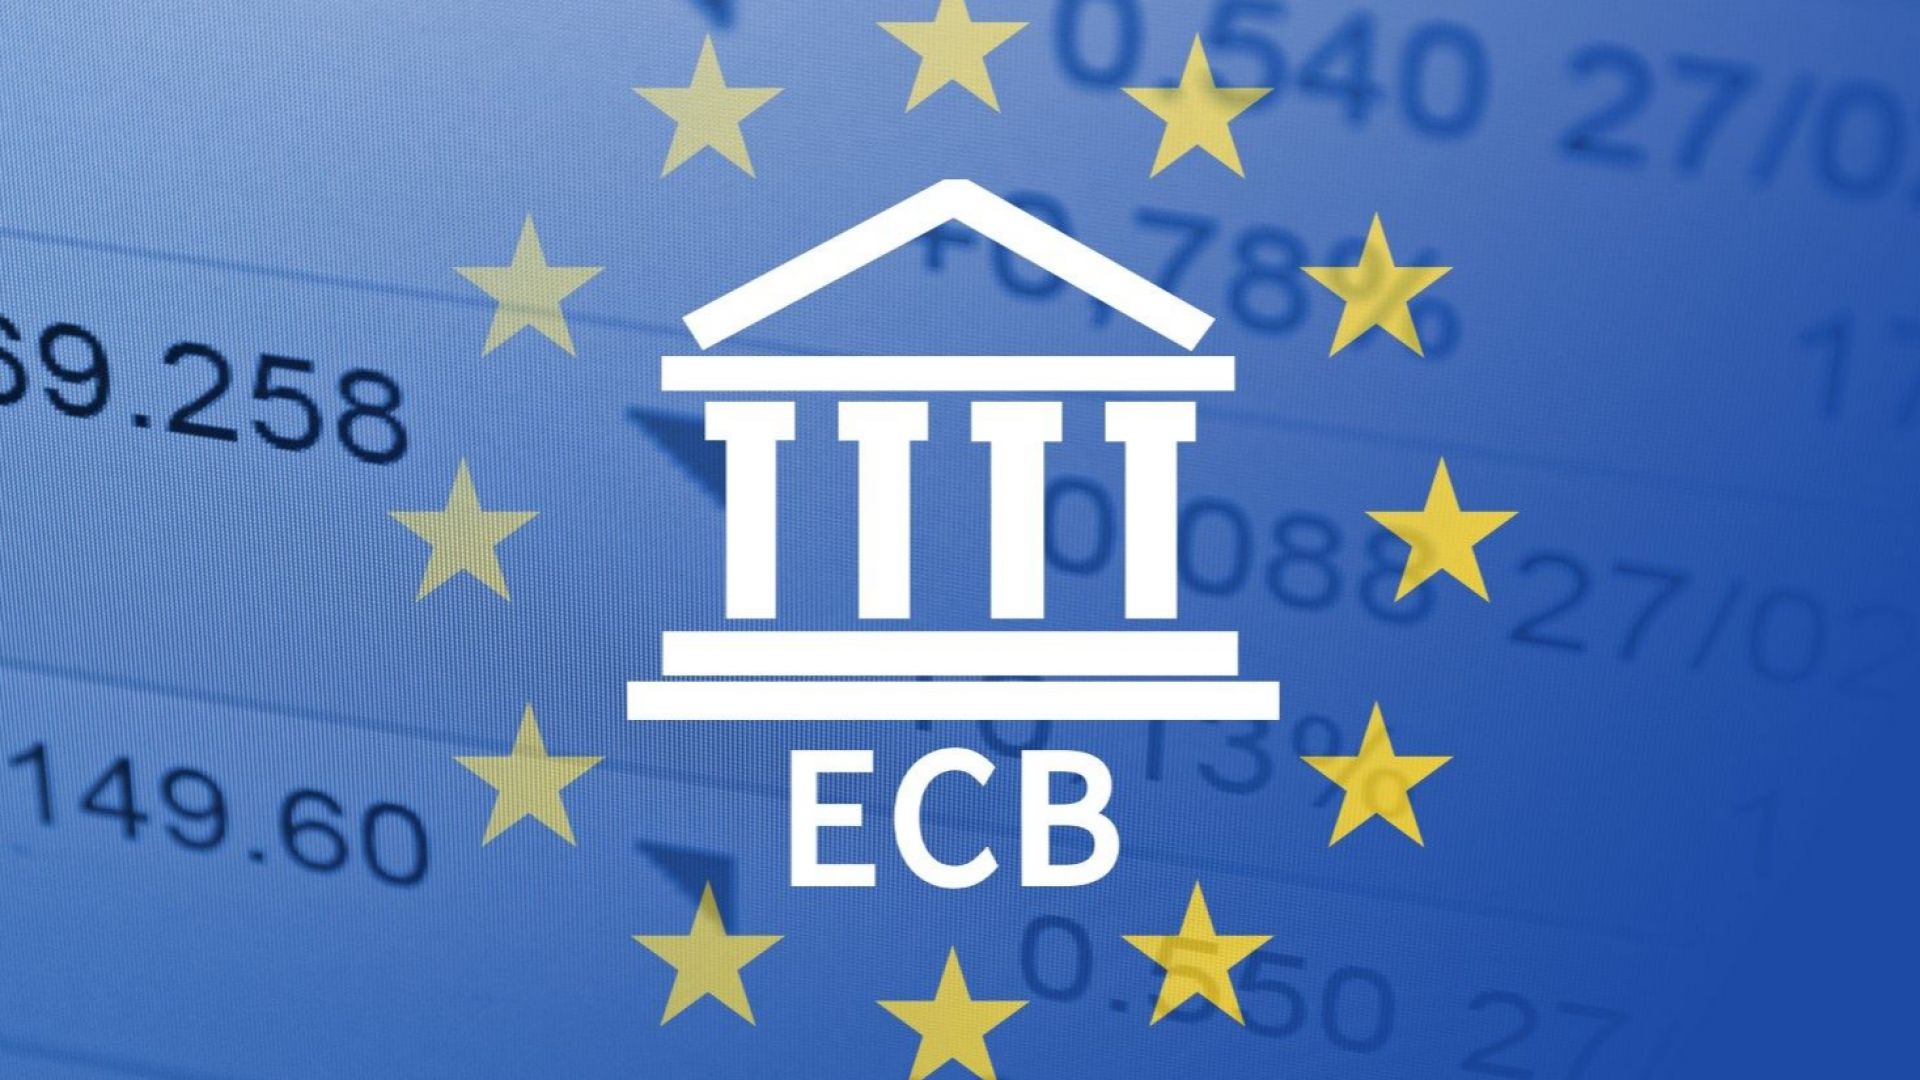 ЕЦБ отчита рязко забавяне на бизнес кредитирането в еврозоната през септември